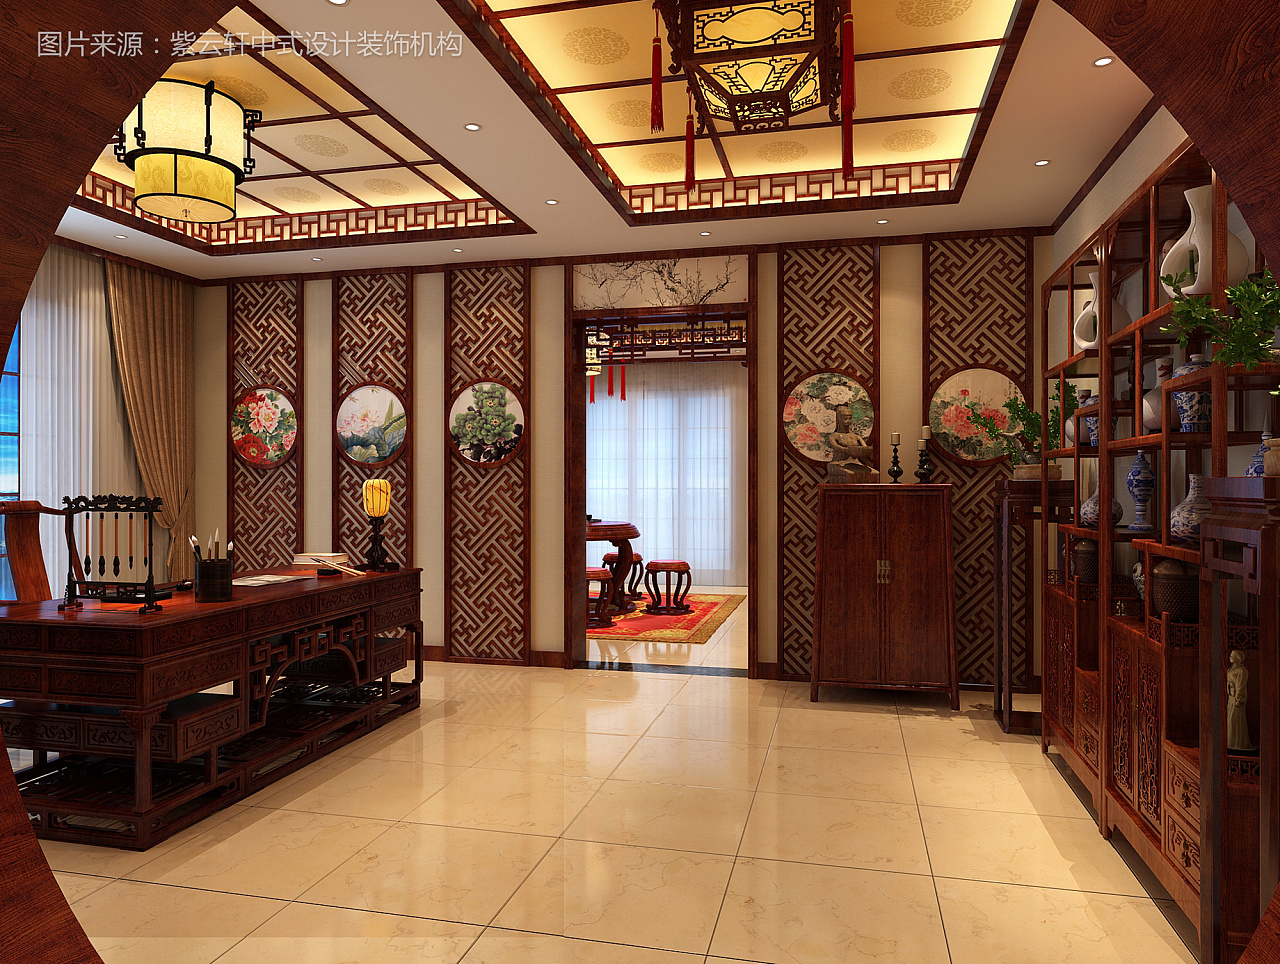 古韵浓浓中式风格客厅背景墙实景图- 中国风